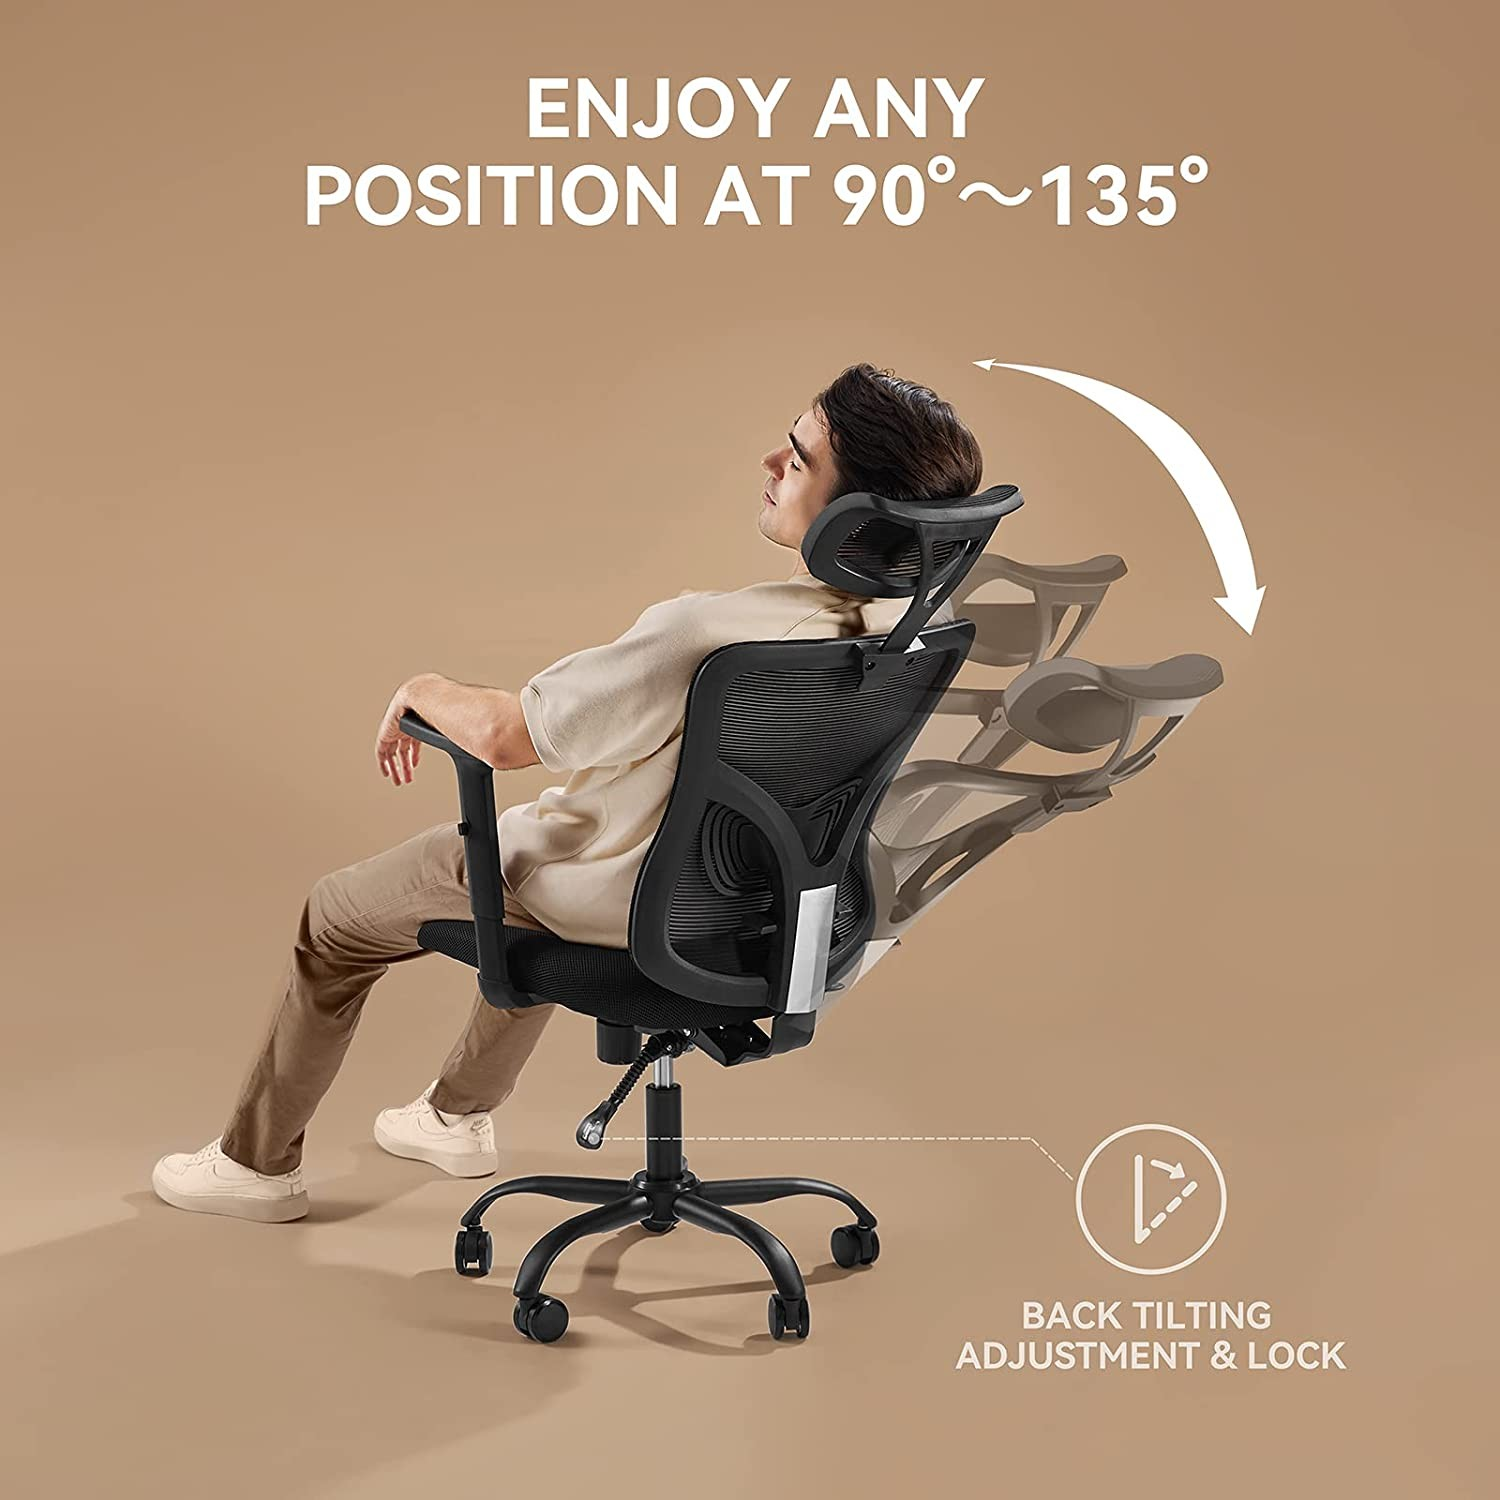 Tena namaha ny olan'ny sedentary ve ny seza ergonomika?